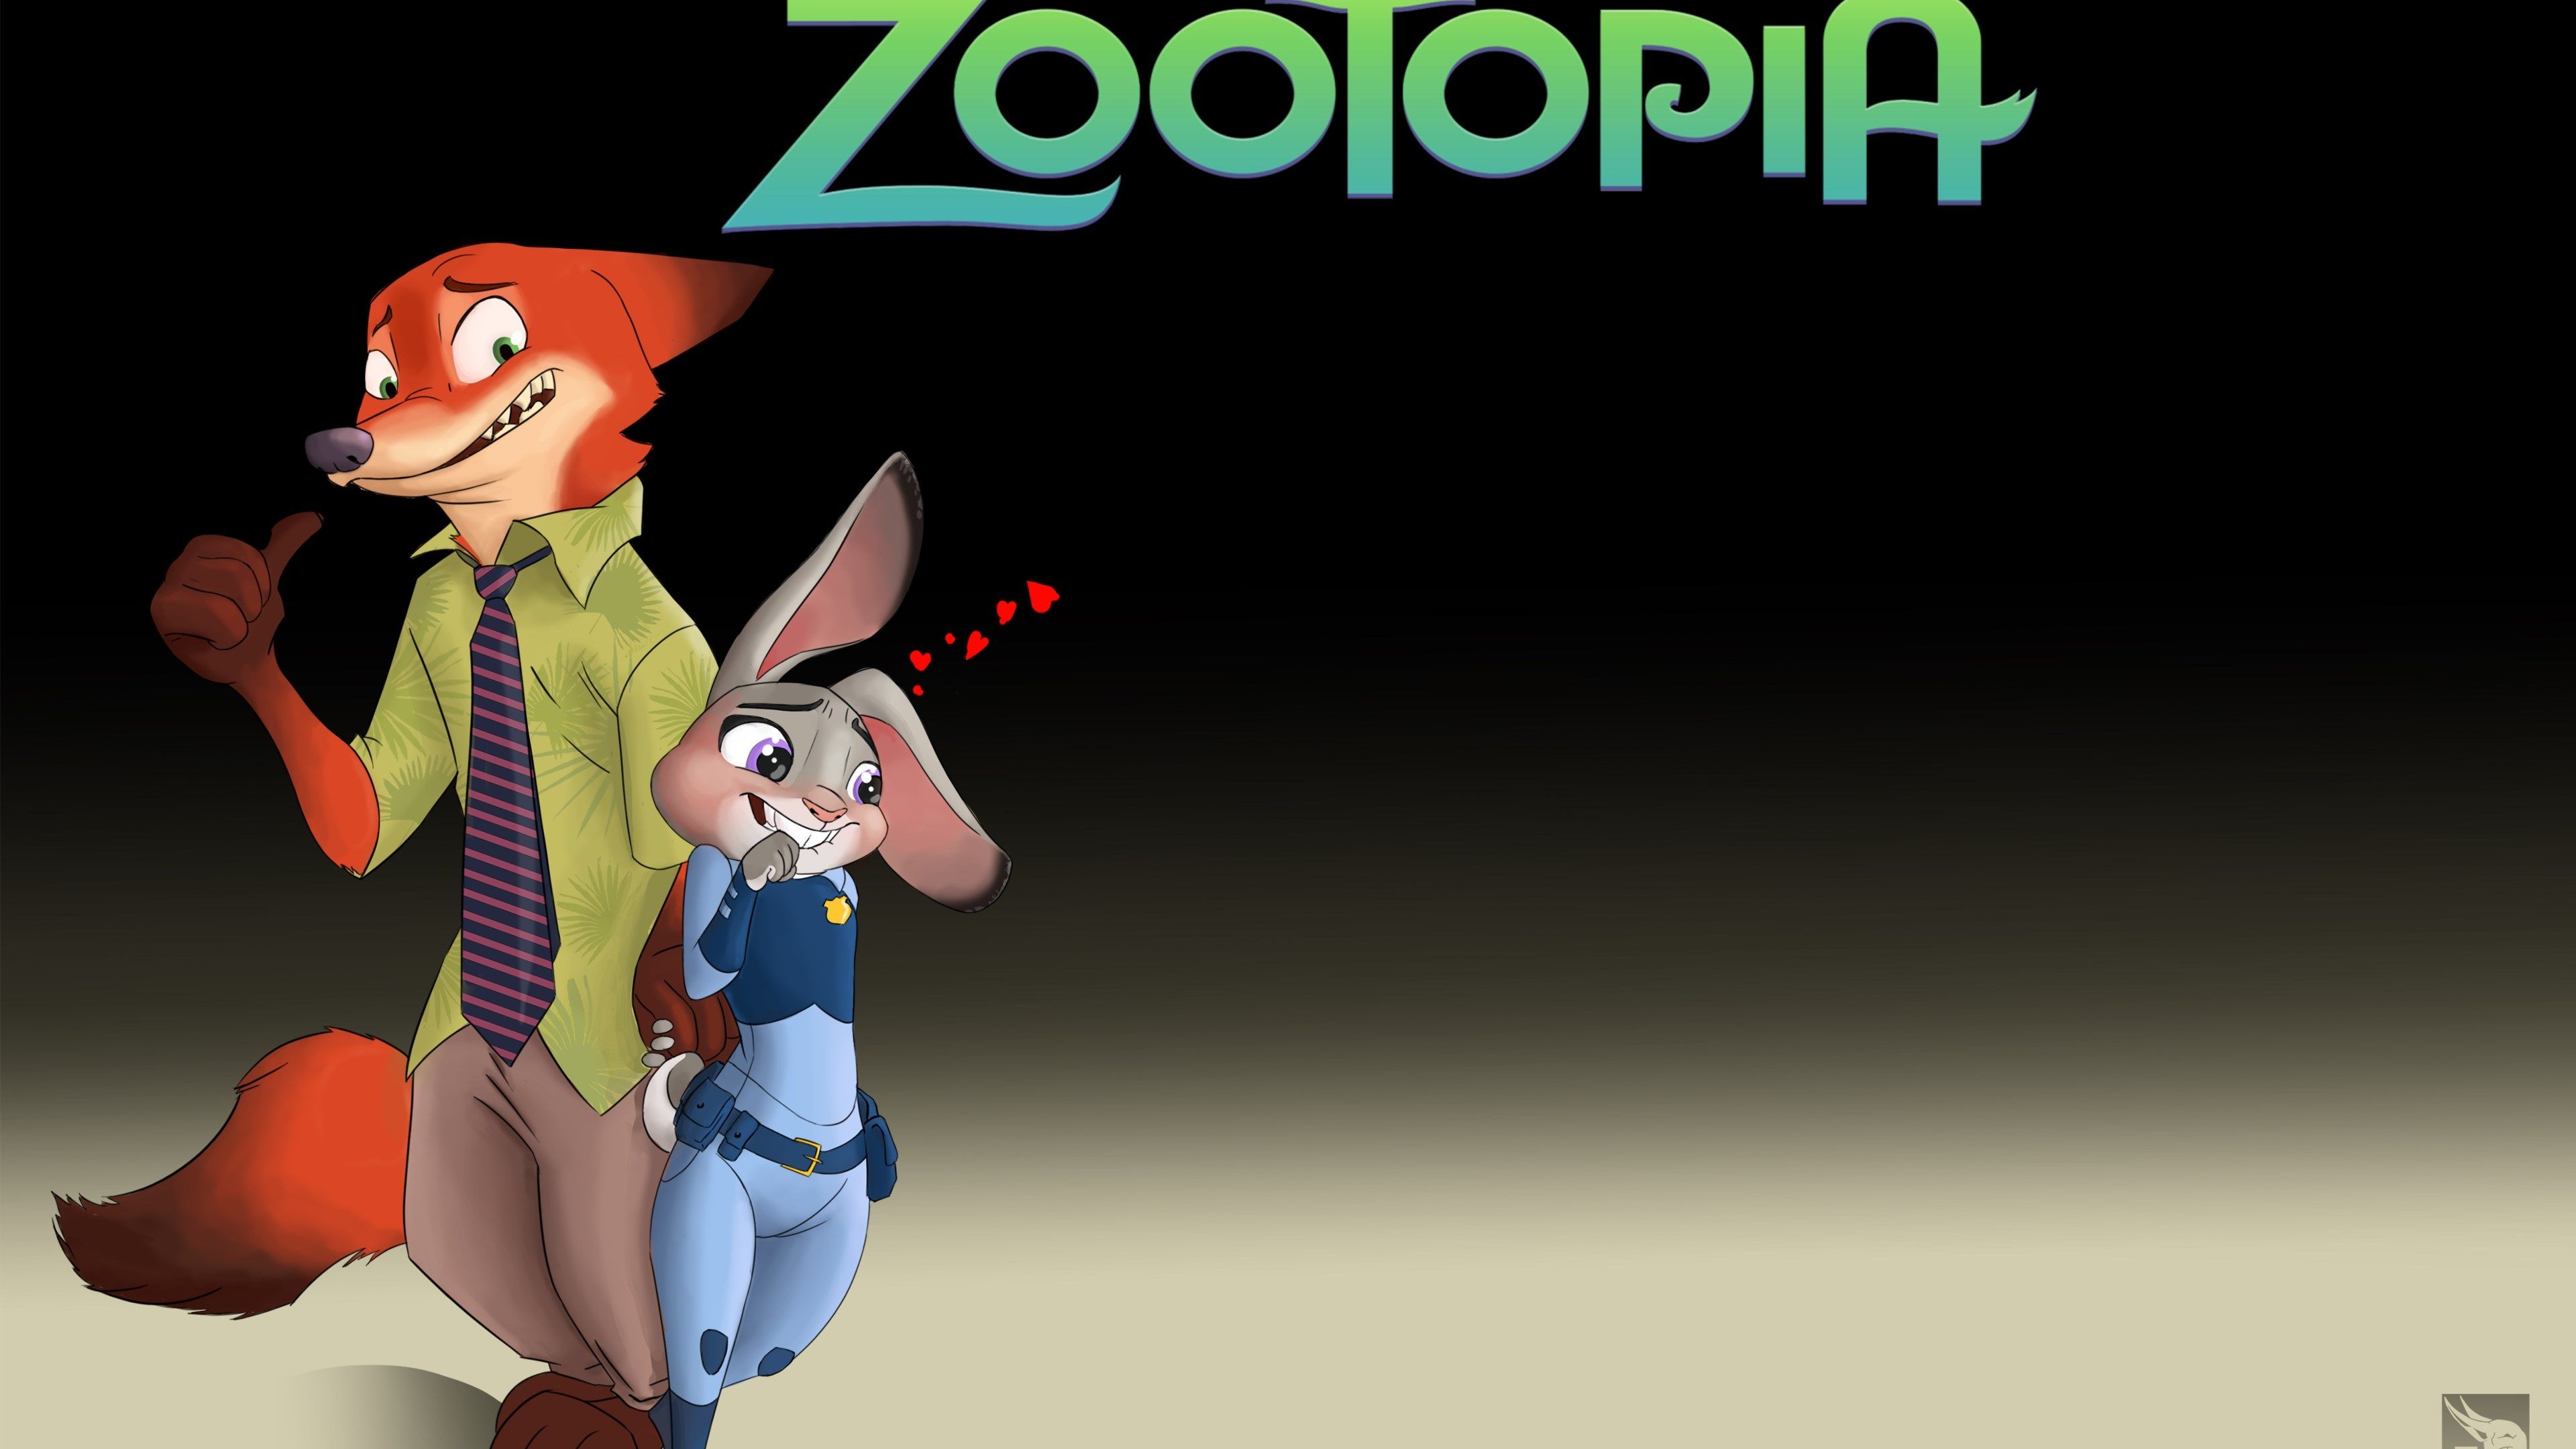 zootopia 4k cool wallpaper for desktop. Zootopia, Zootopia movie, Zootopia hd